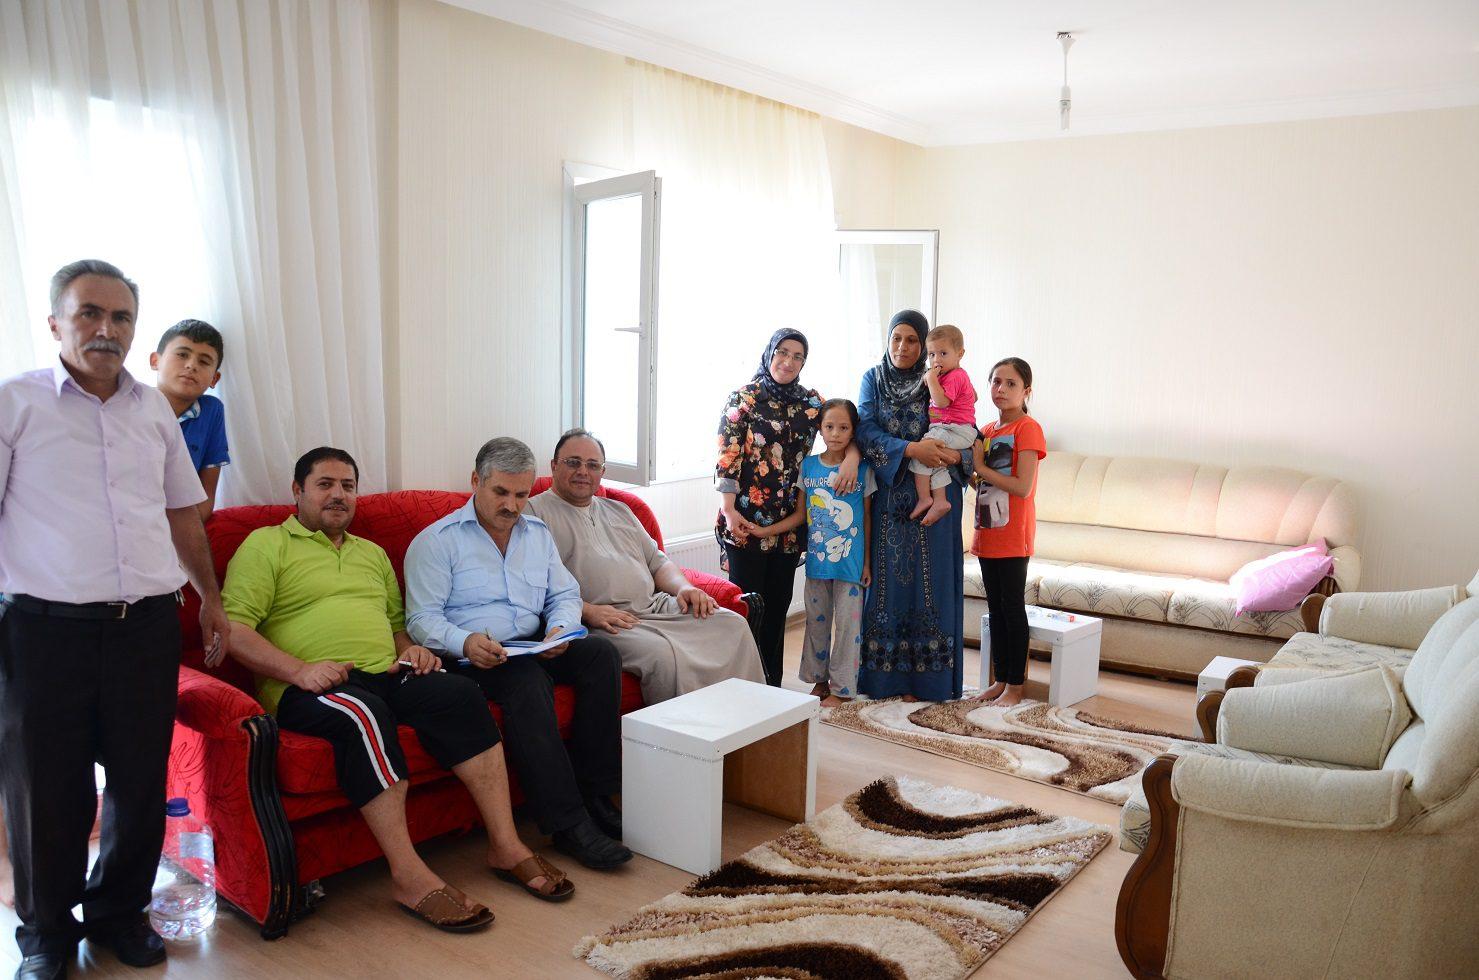 Suriyeli aileye Sosyal Konsey yardımı - Kırıkkale Haber, Son Dakika Kırıkkale Haberleri